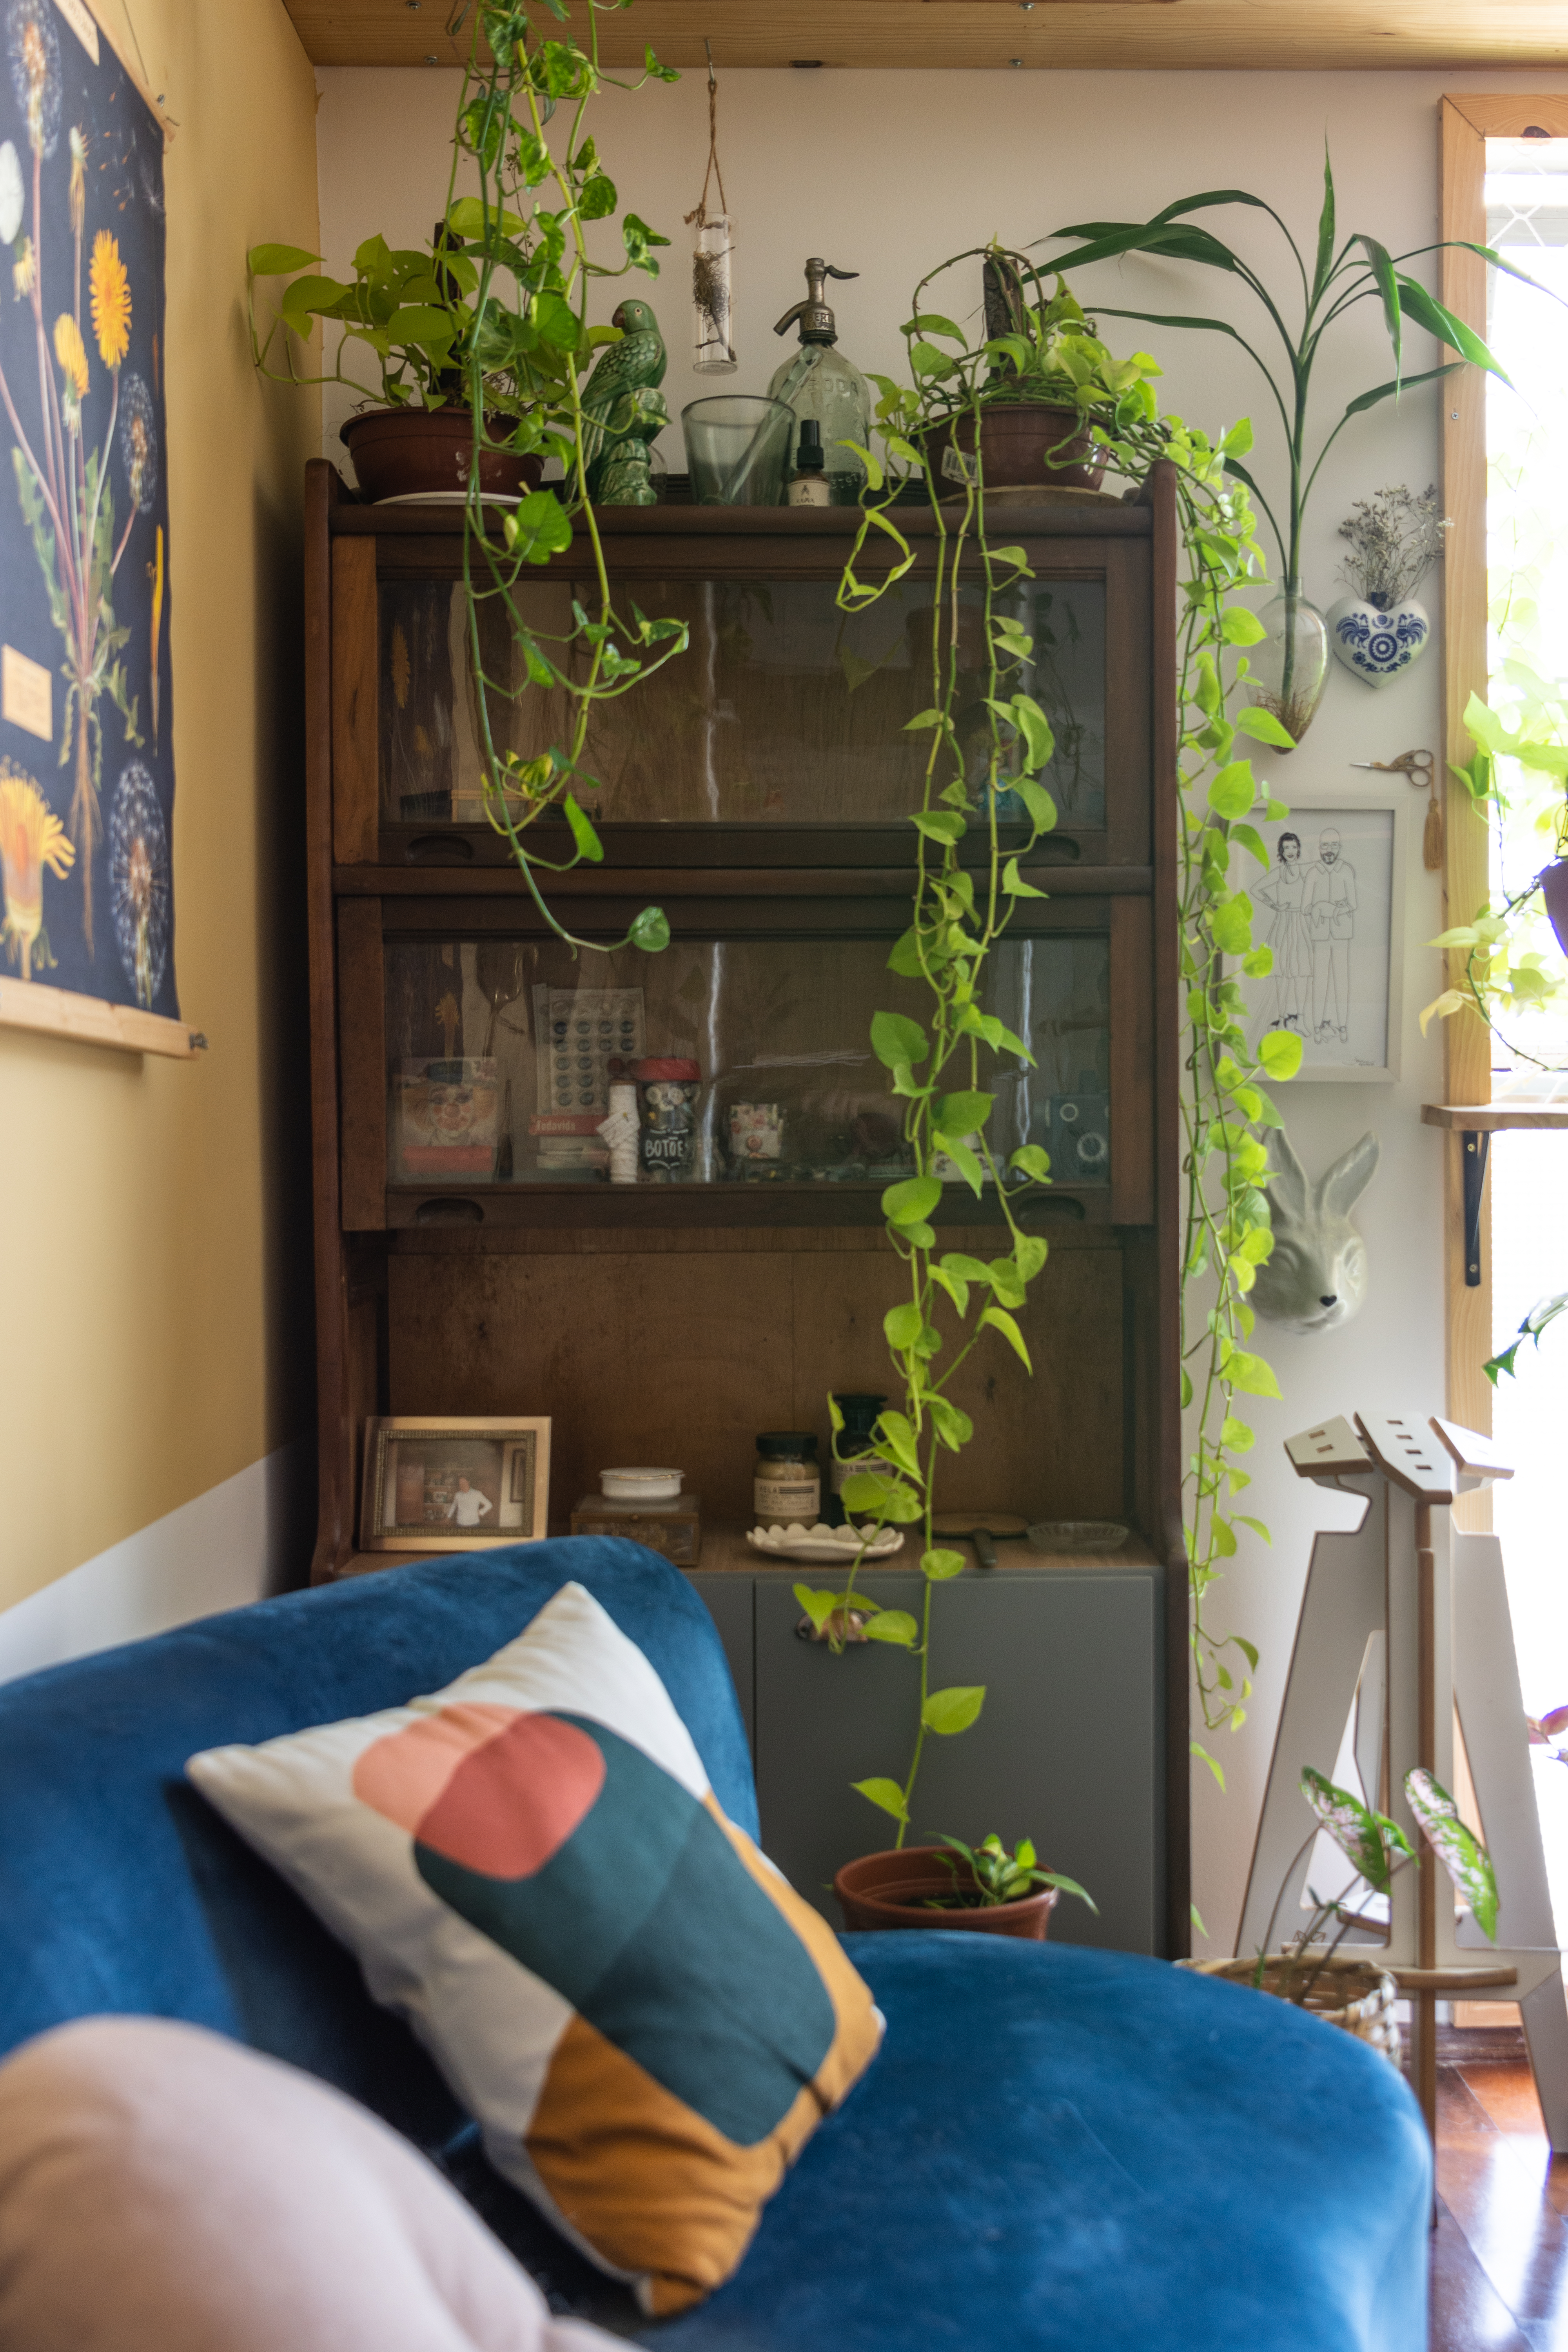 Sala de estar com estante, sofá azul e plantas suspensas.